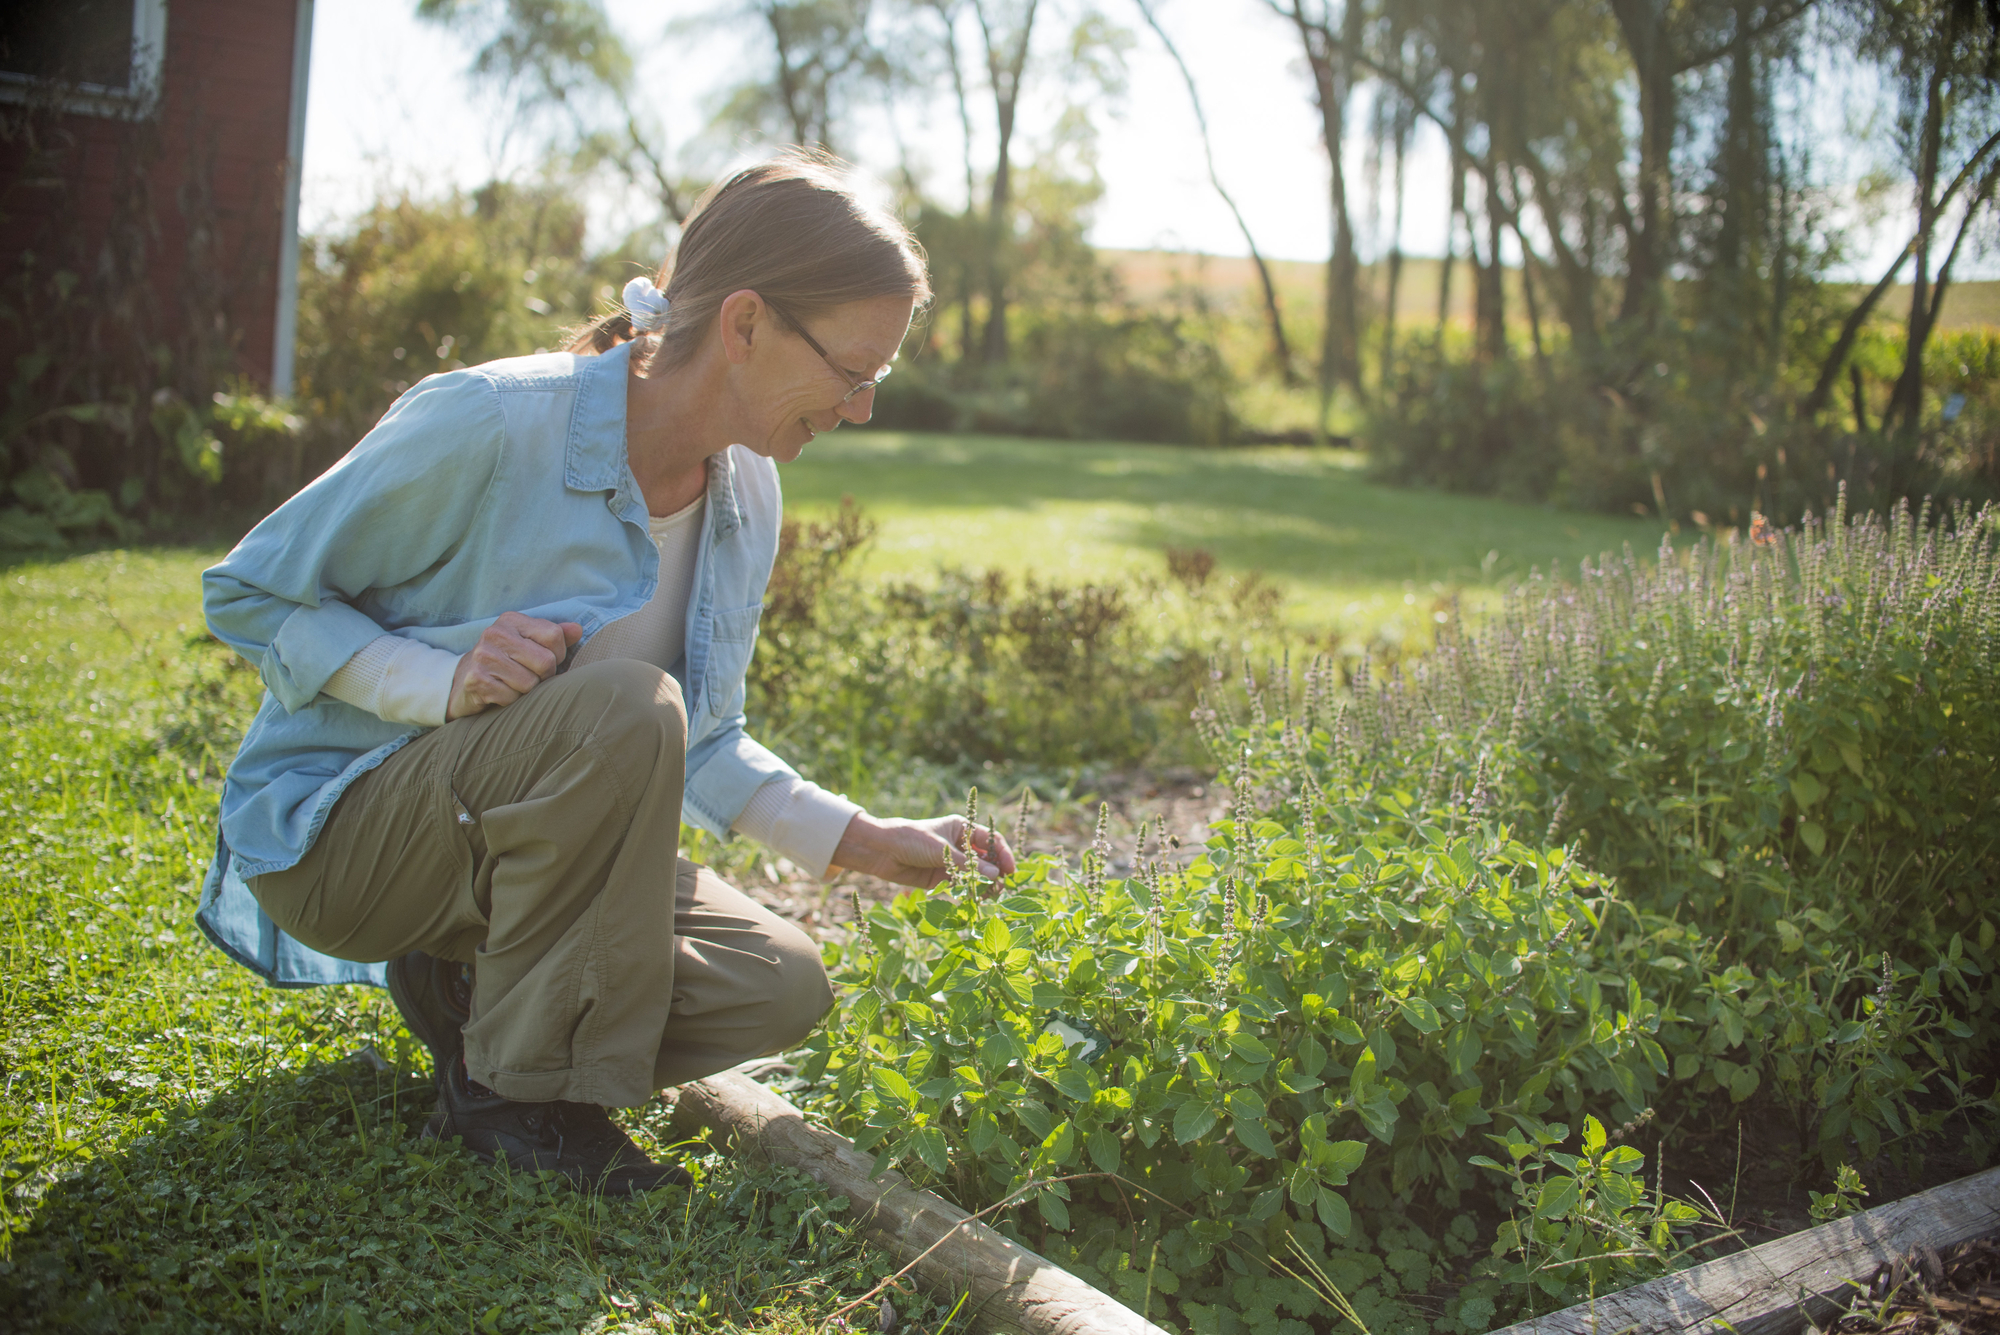 Gardens serve as living textbooks for herbalist educator | Center For ...